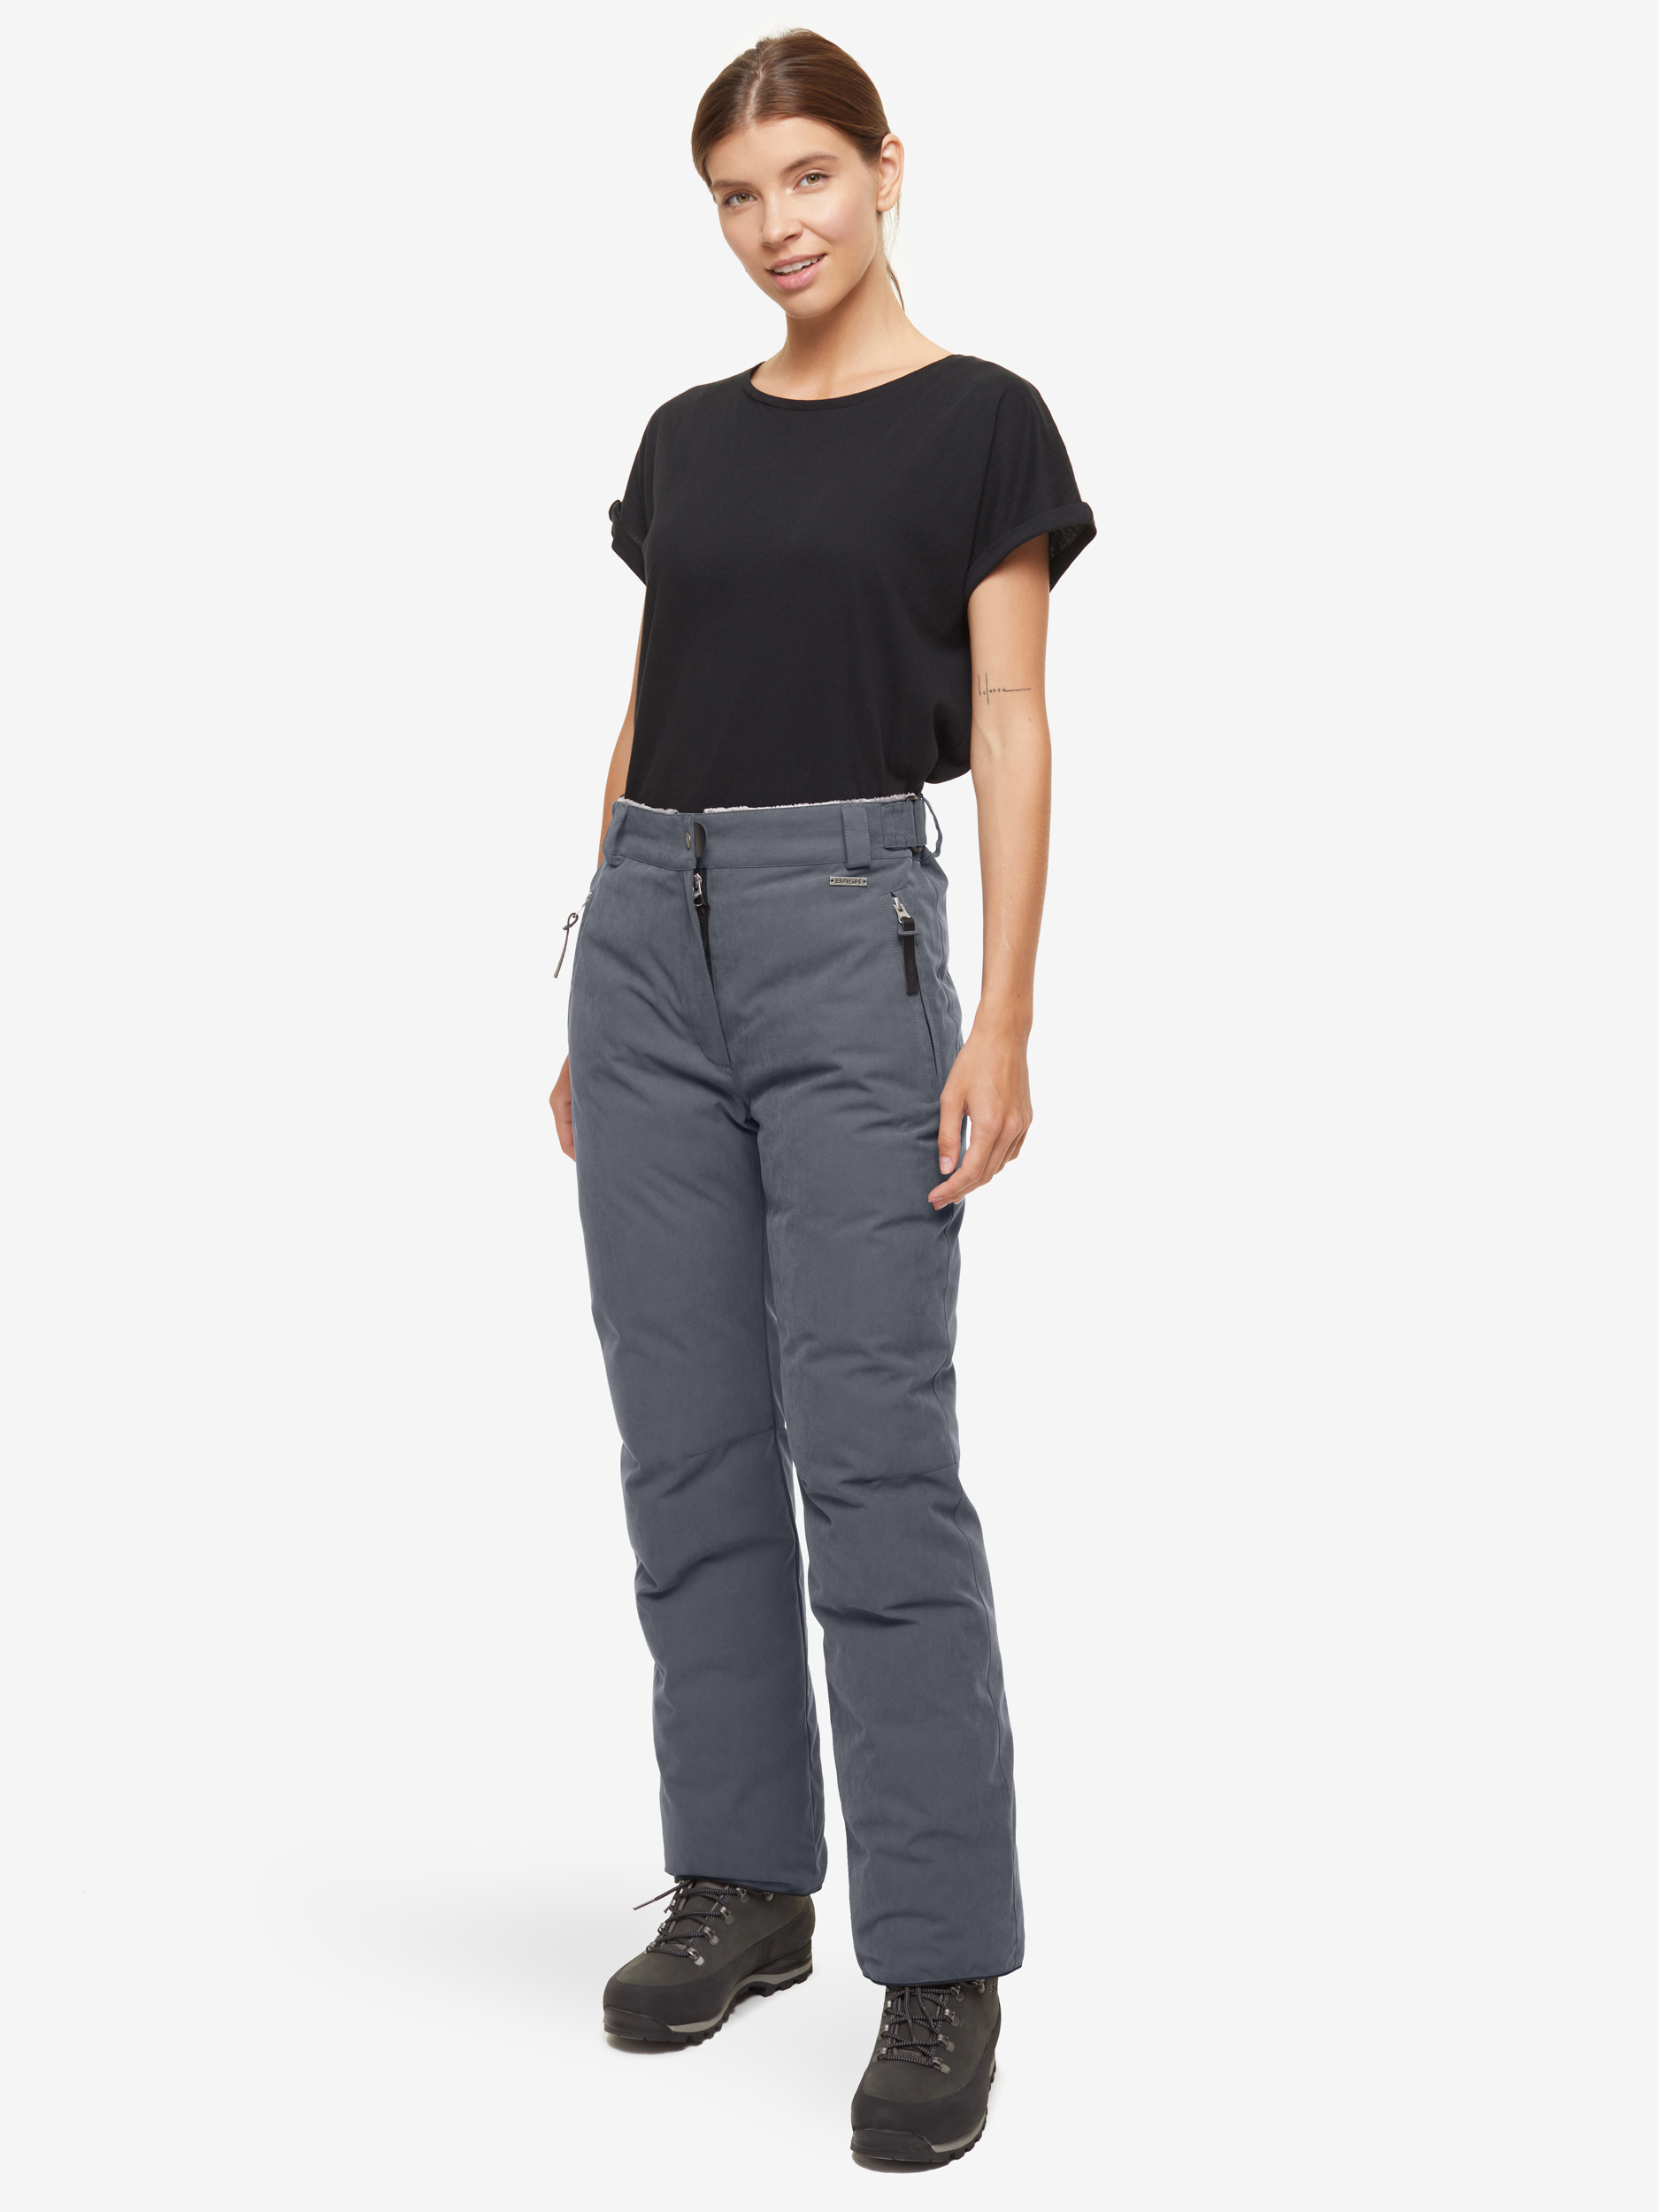 Пуховые брюки BASK, размер 46, цвет серый